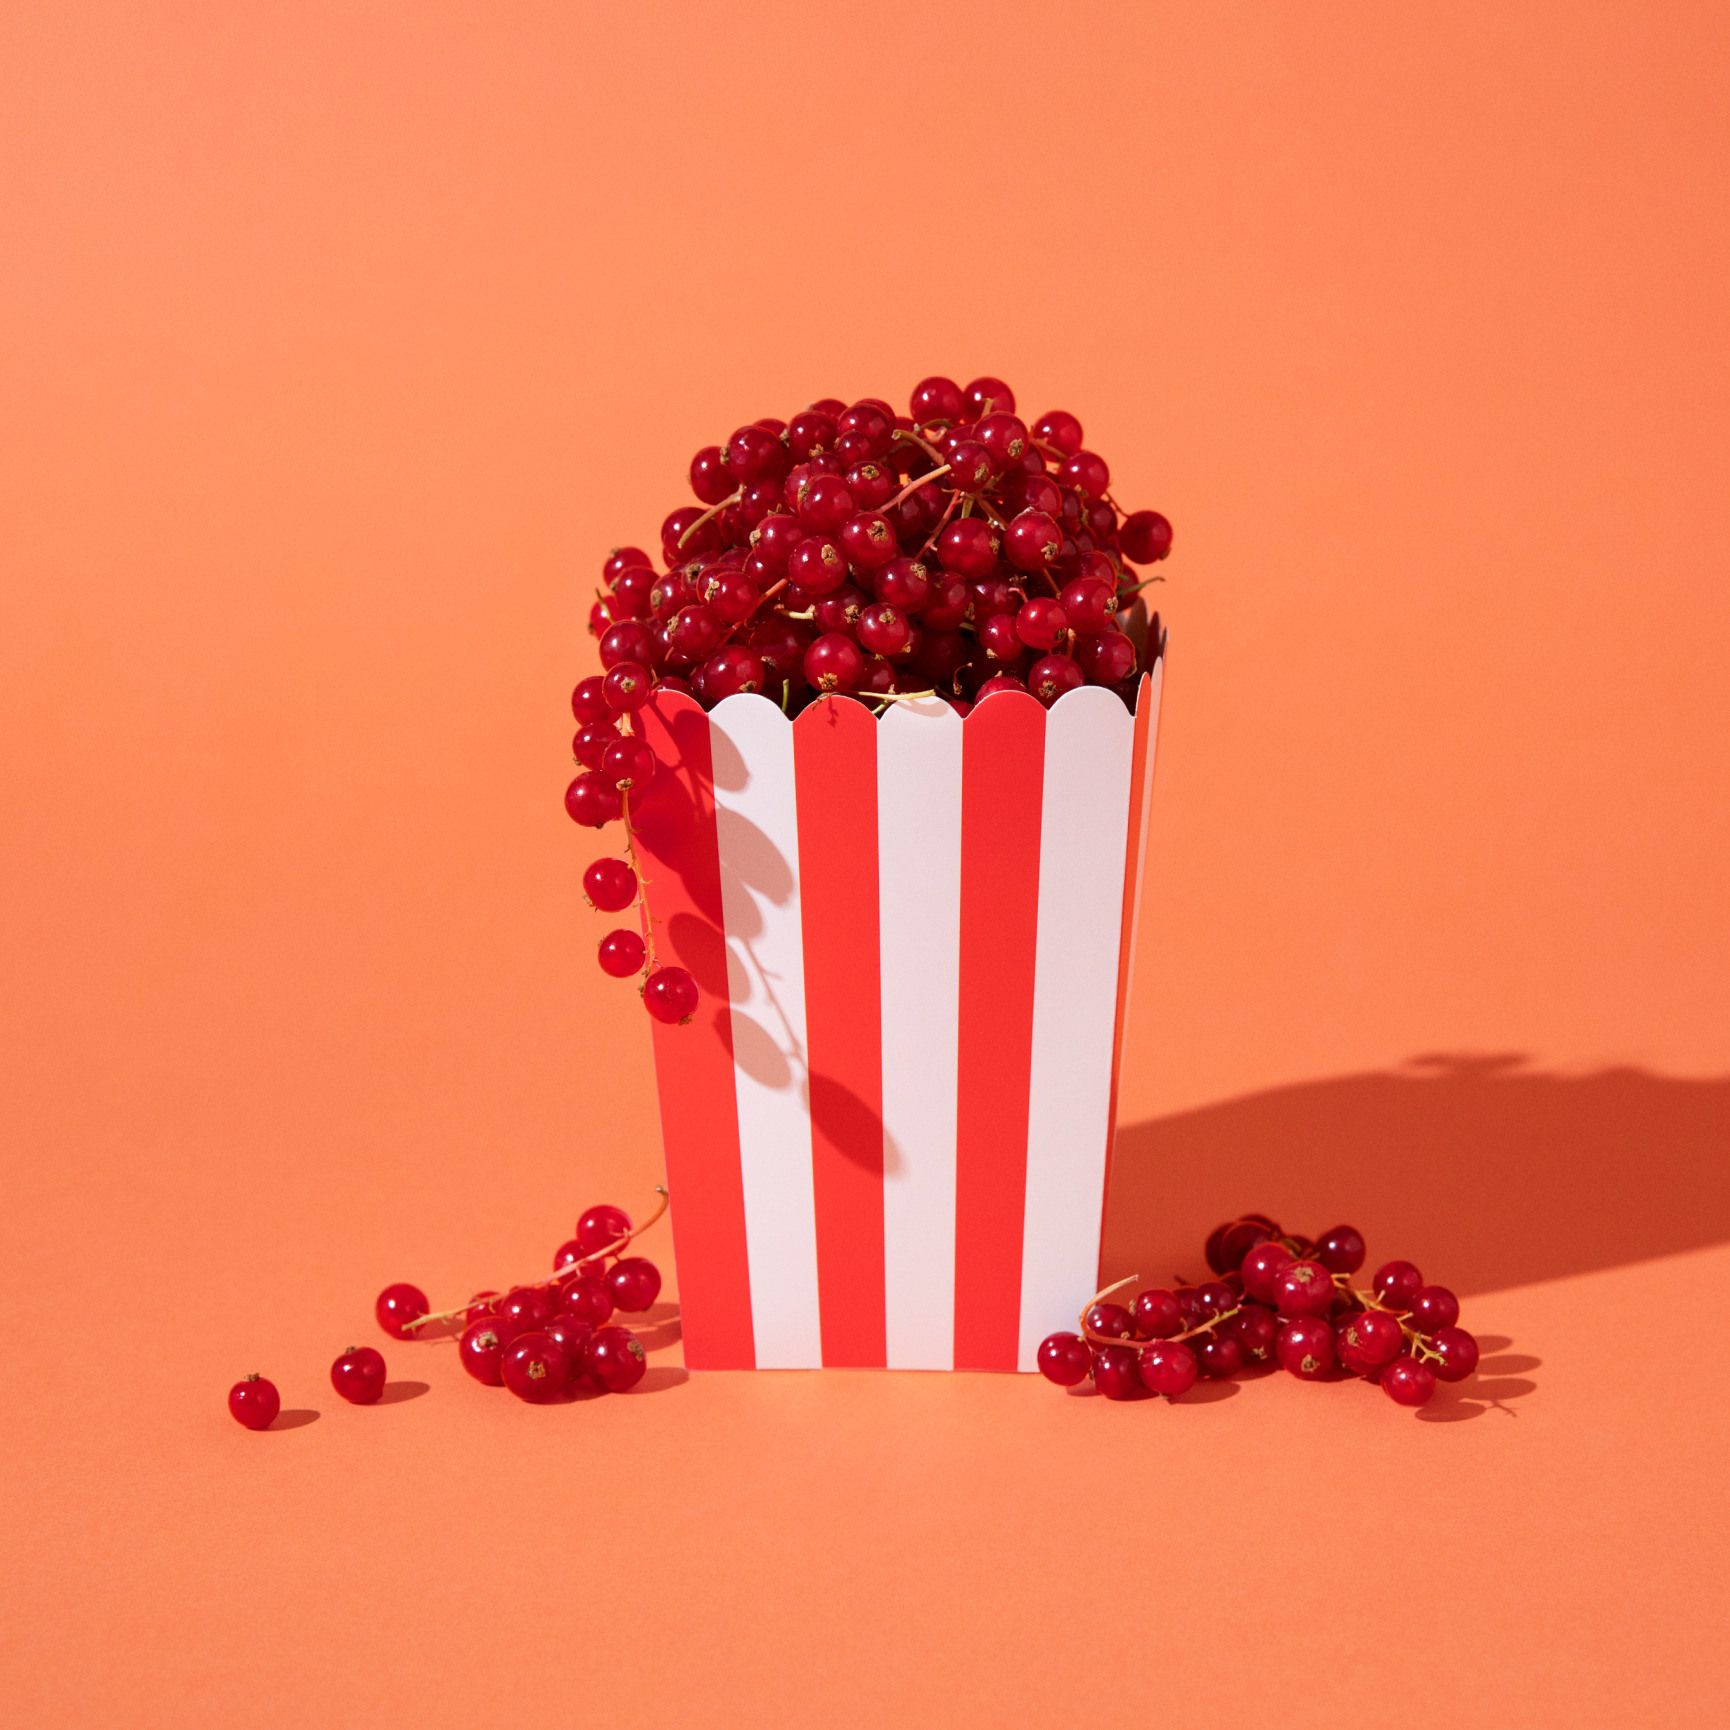 Heino brand image – popcorn box with berries